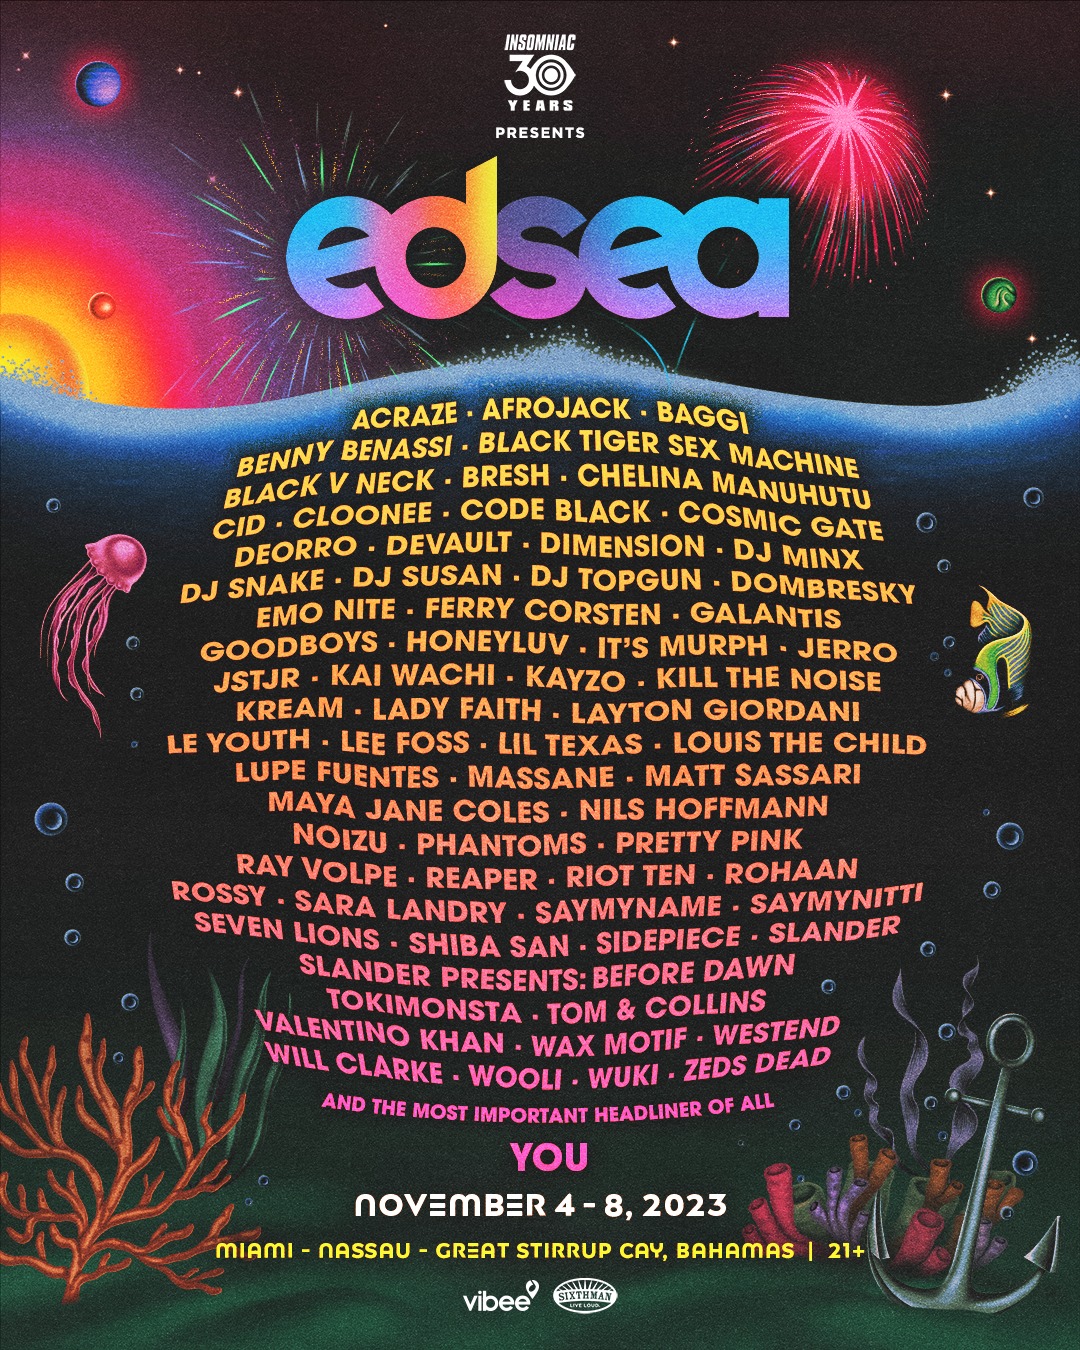 EDSea 2023 lineup poster